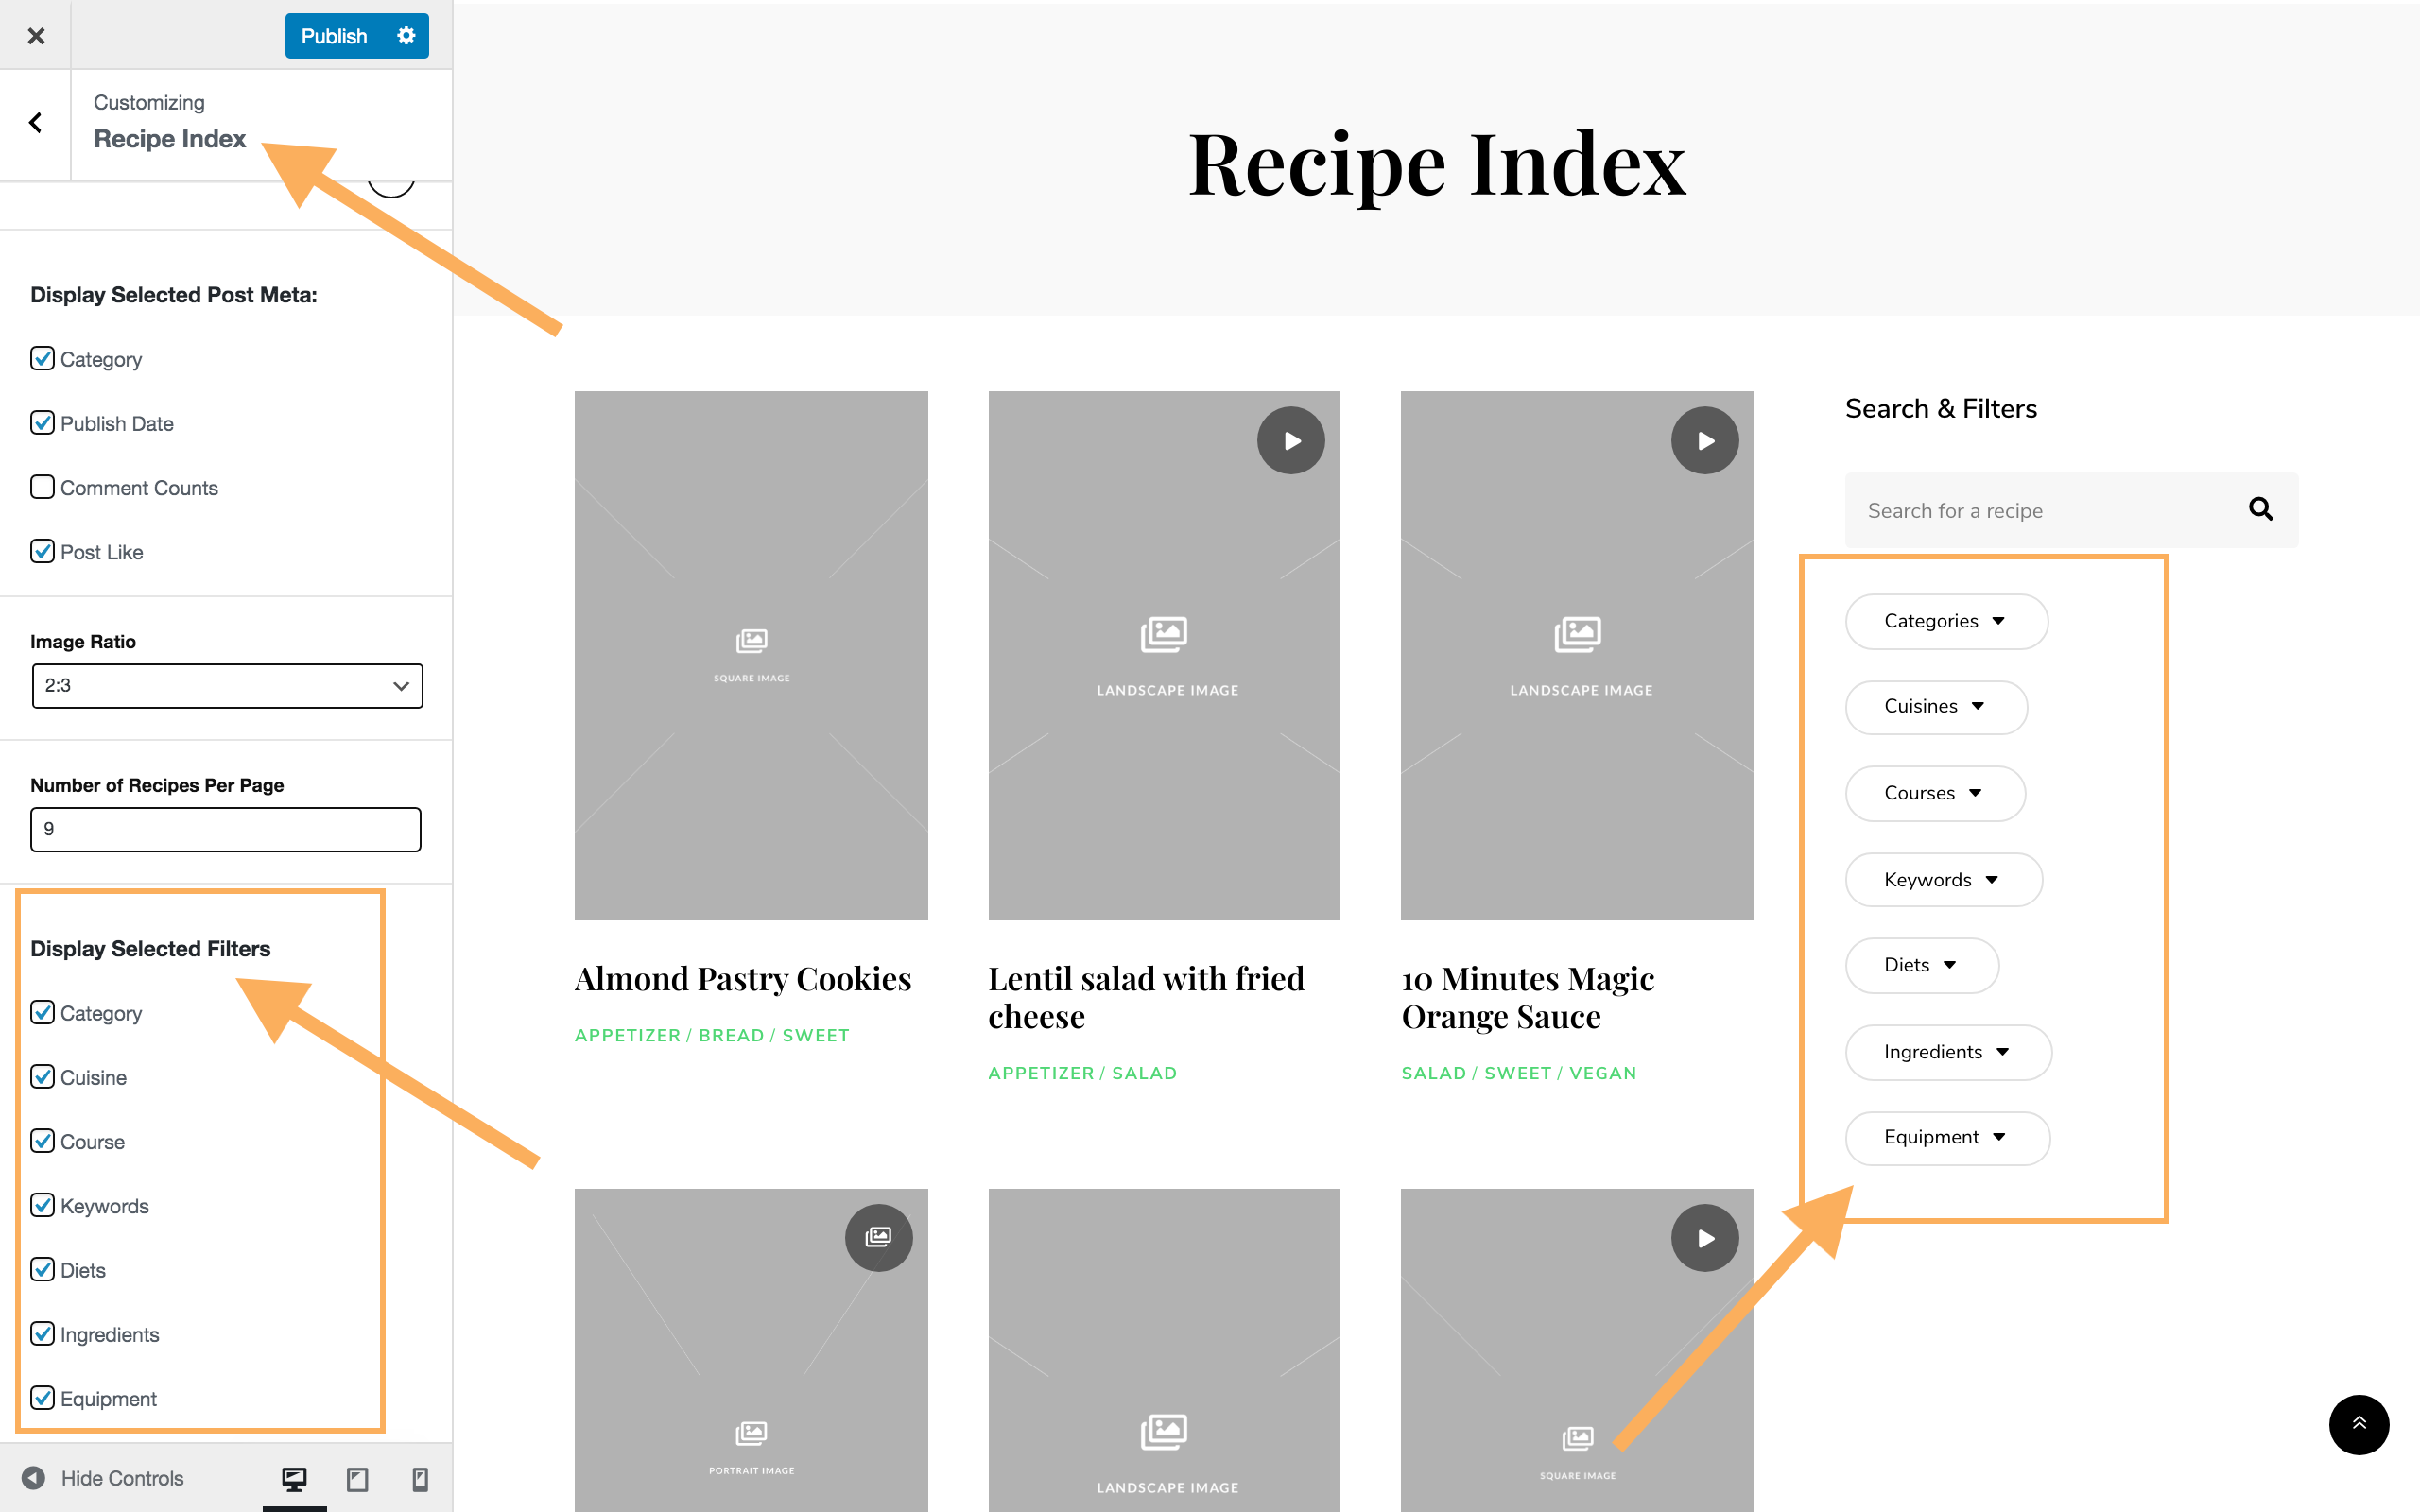 Recipe Index Filters